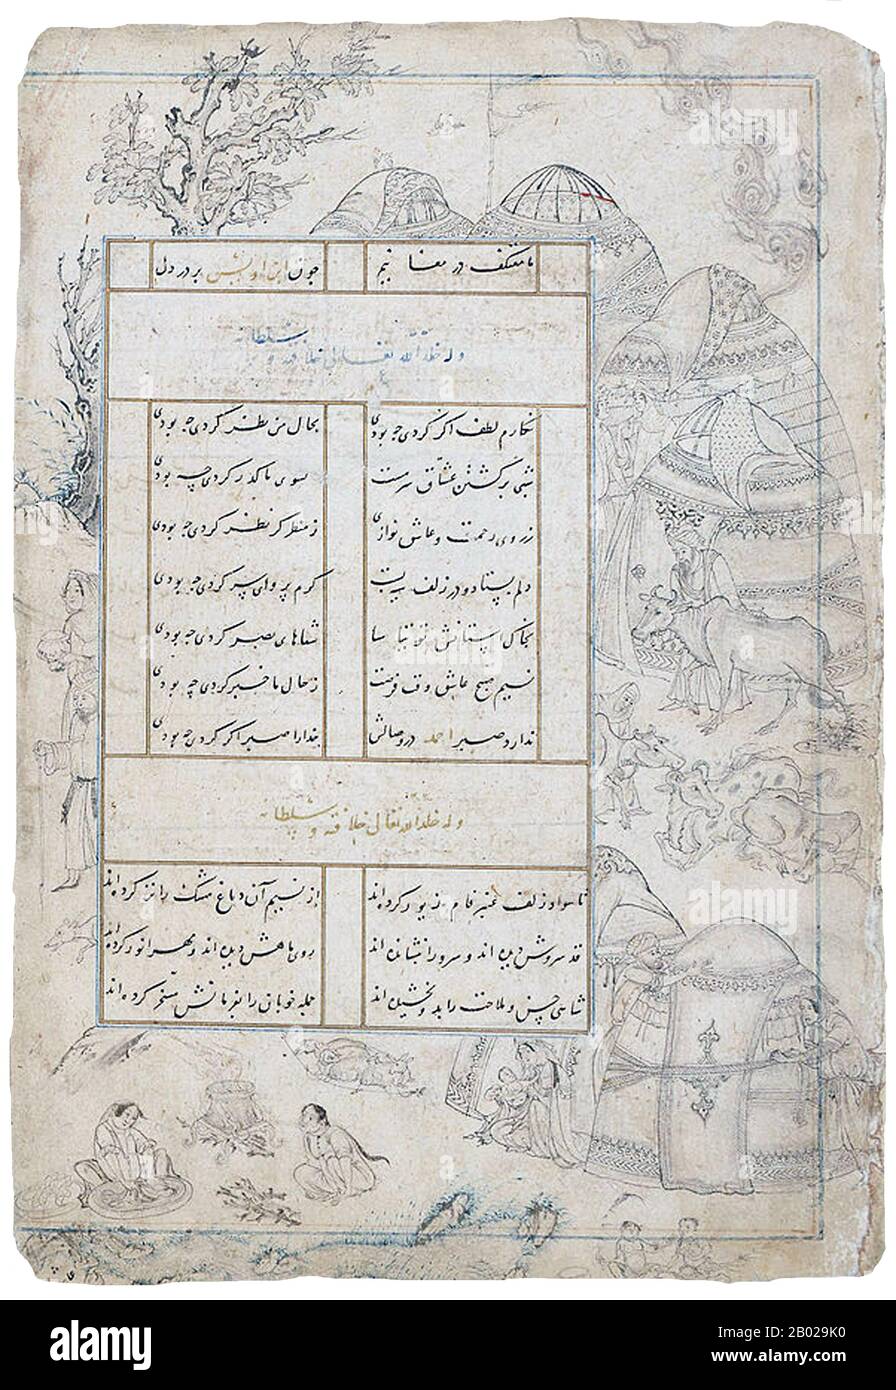 I Jalayiridi erano una dinastia mongola che governò l'Iraq e la Persia occidentale dopo la rottura del Khanato mongolo di Persia (o Ilkhanato) nella 1330s. Il sultanato di Jalayirid durò circa cinquant'anni, fino a quando non fu sconvolto dalle conquiste di Tamerlane e dalle rivolte dei "Turchi Di Pecora nera" o dei turkmen di Qara Qoyunlu. Dopo la morte di Tamerlane nel 1405, vi fu un breve tentativo di ristabilire l'sultanato nell'Iraq meridionale e nel Khuzistan. I Jalayiridi furono infine eliminati da Kara Koyunlu nel 1432. Foto Stock